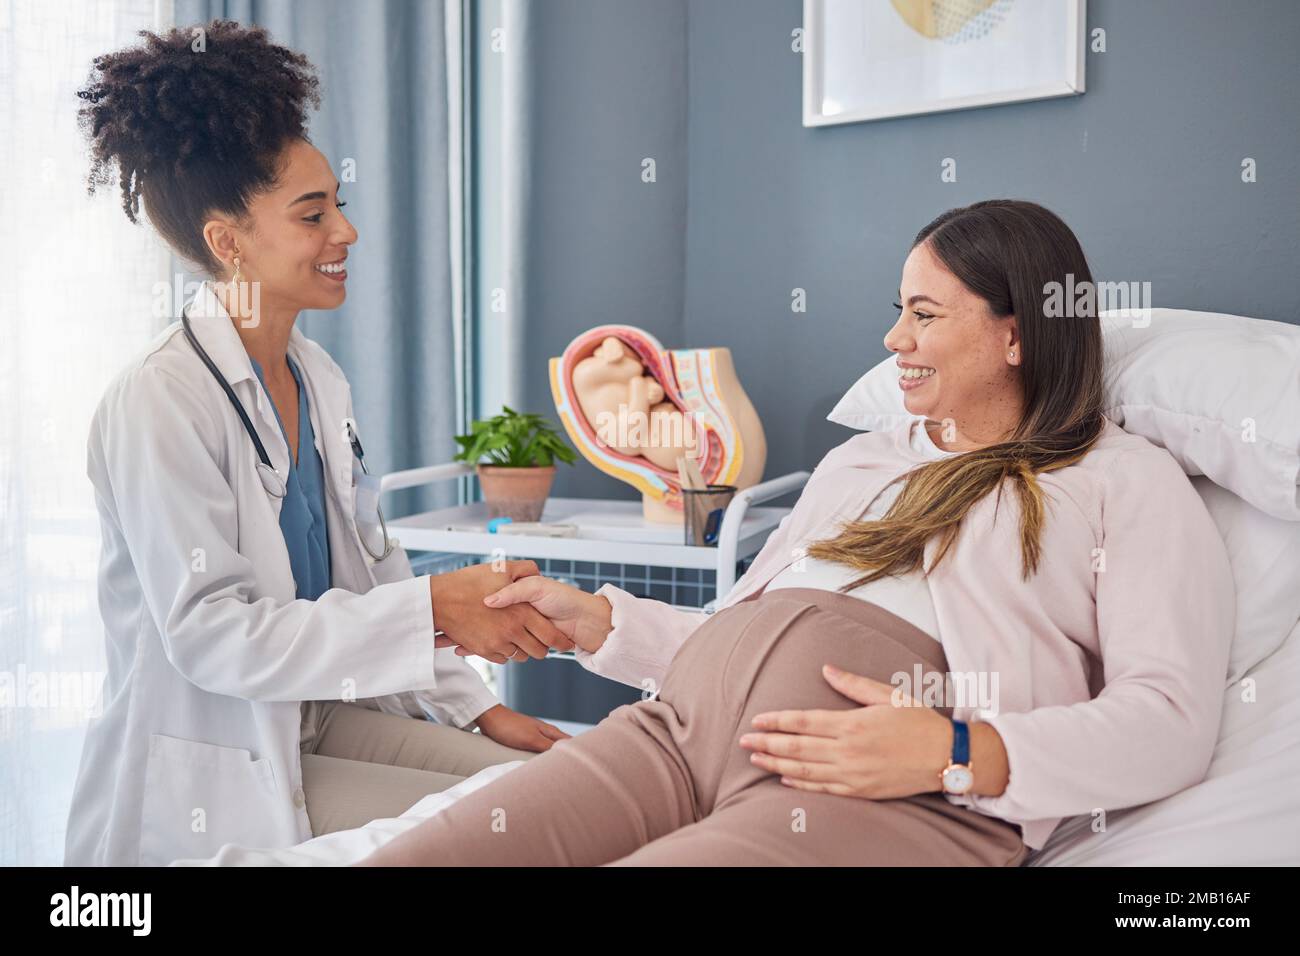 Schwangere Patientin, Arzt und Gynäkologe Hand schütteln für Willkommen, danke und hallo Schwangerschaft Mutterschaftsberatung, Gynäkologie und Frau Stockfoto